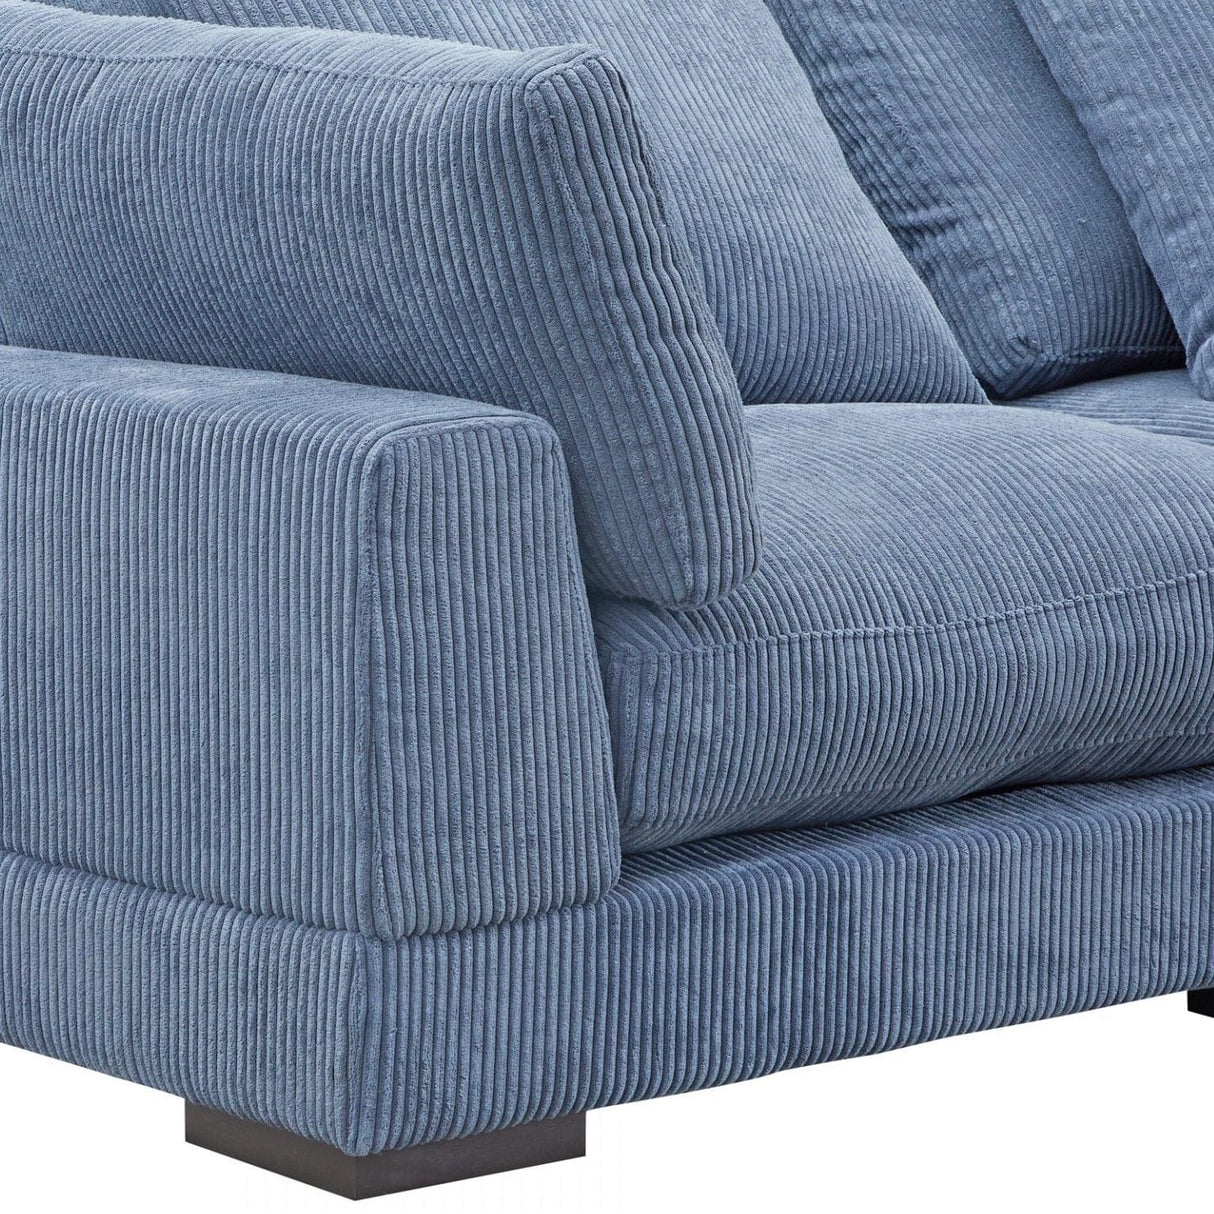 BLU Home Tumble Lounge Modular Sectional Furniture